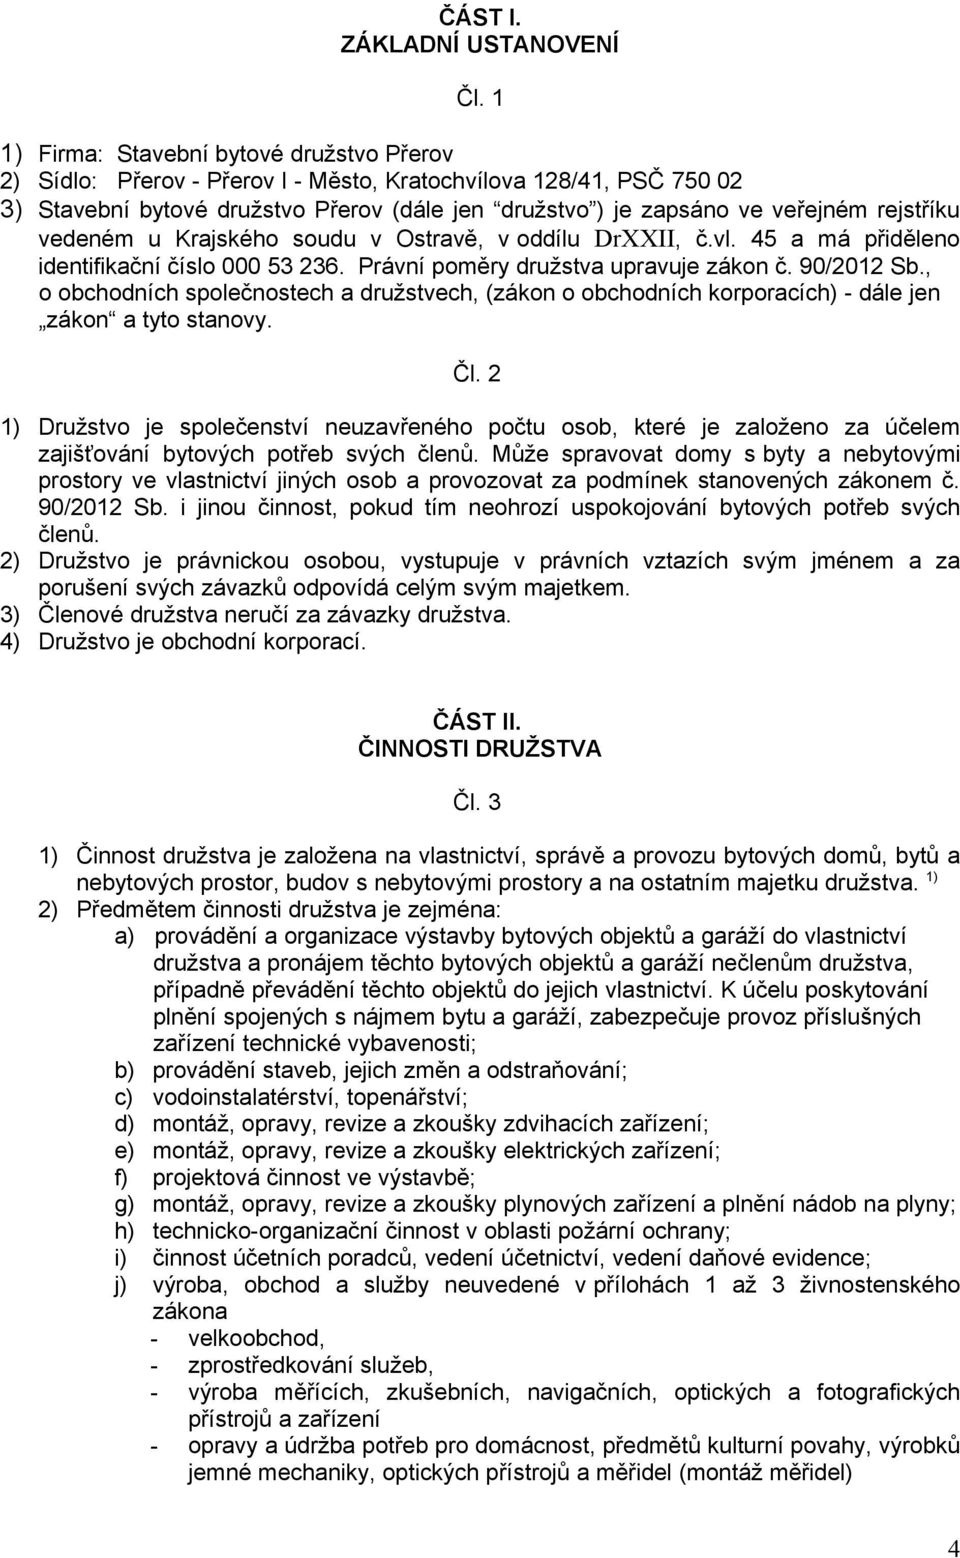 rejstříku vedeném u Krajského soudu v Ostravě, v oddílu DrXXII, č.vl. 45 a má přiděleno identifikační číslo 000 53 236. Právní poměry družstva upravuje zákon č. 90/2012 Sb.